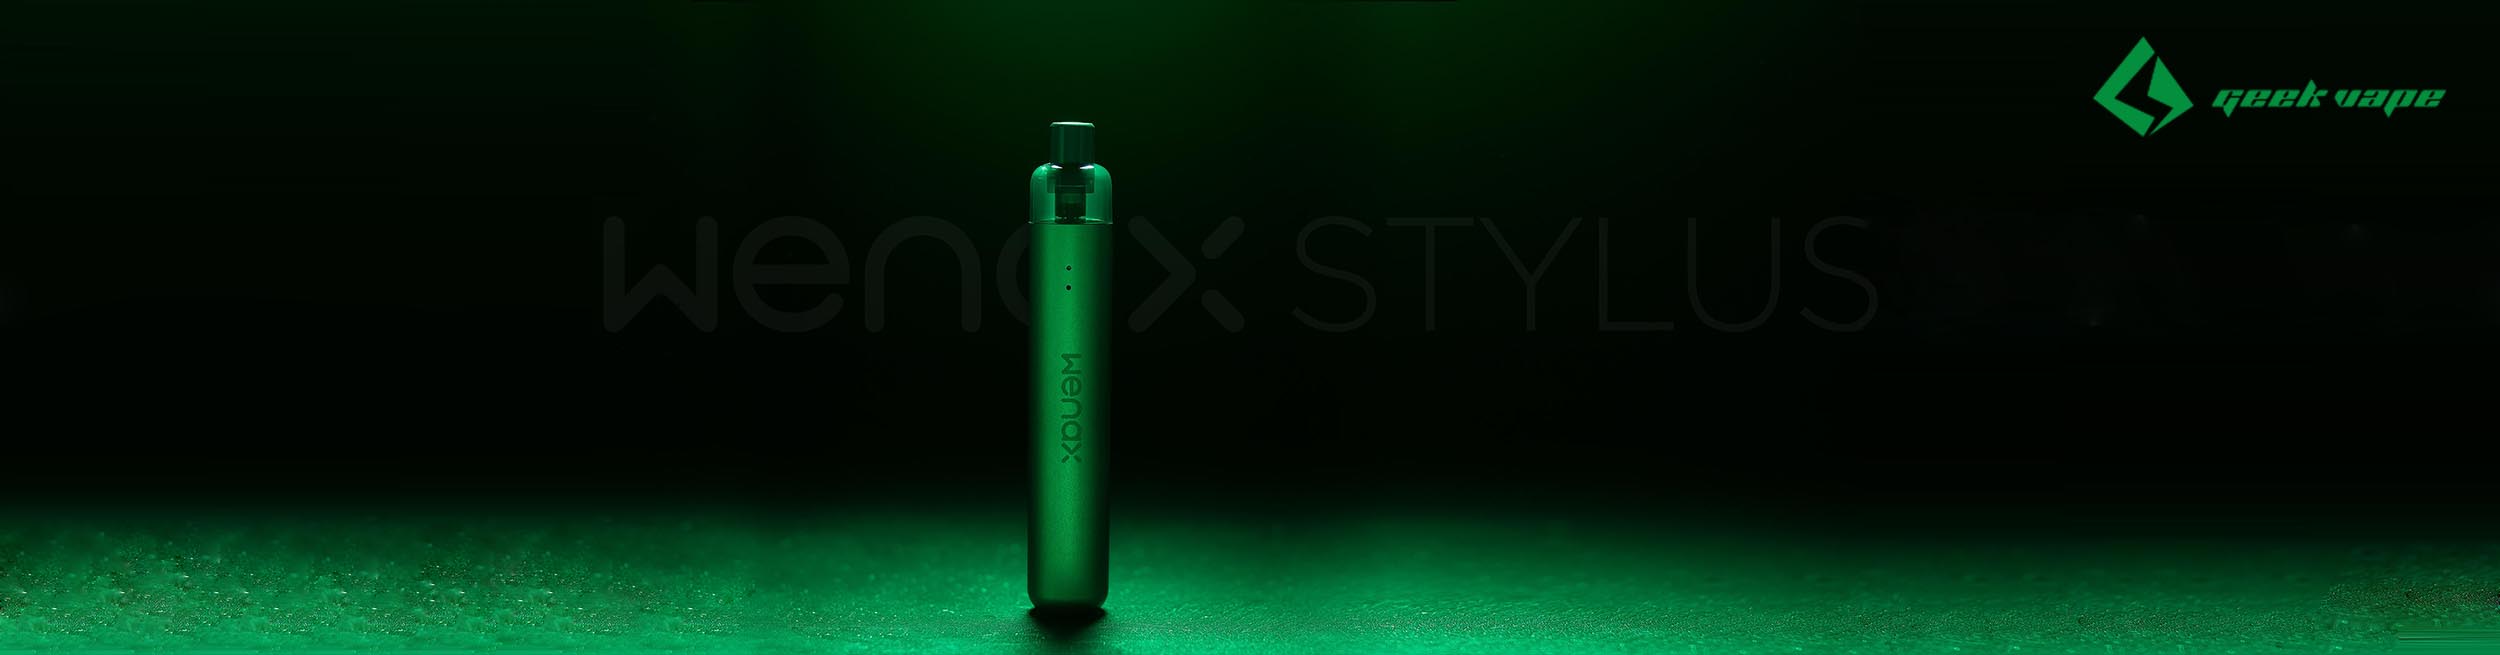 Wenax Stylus elektronická cigareta